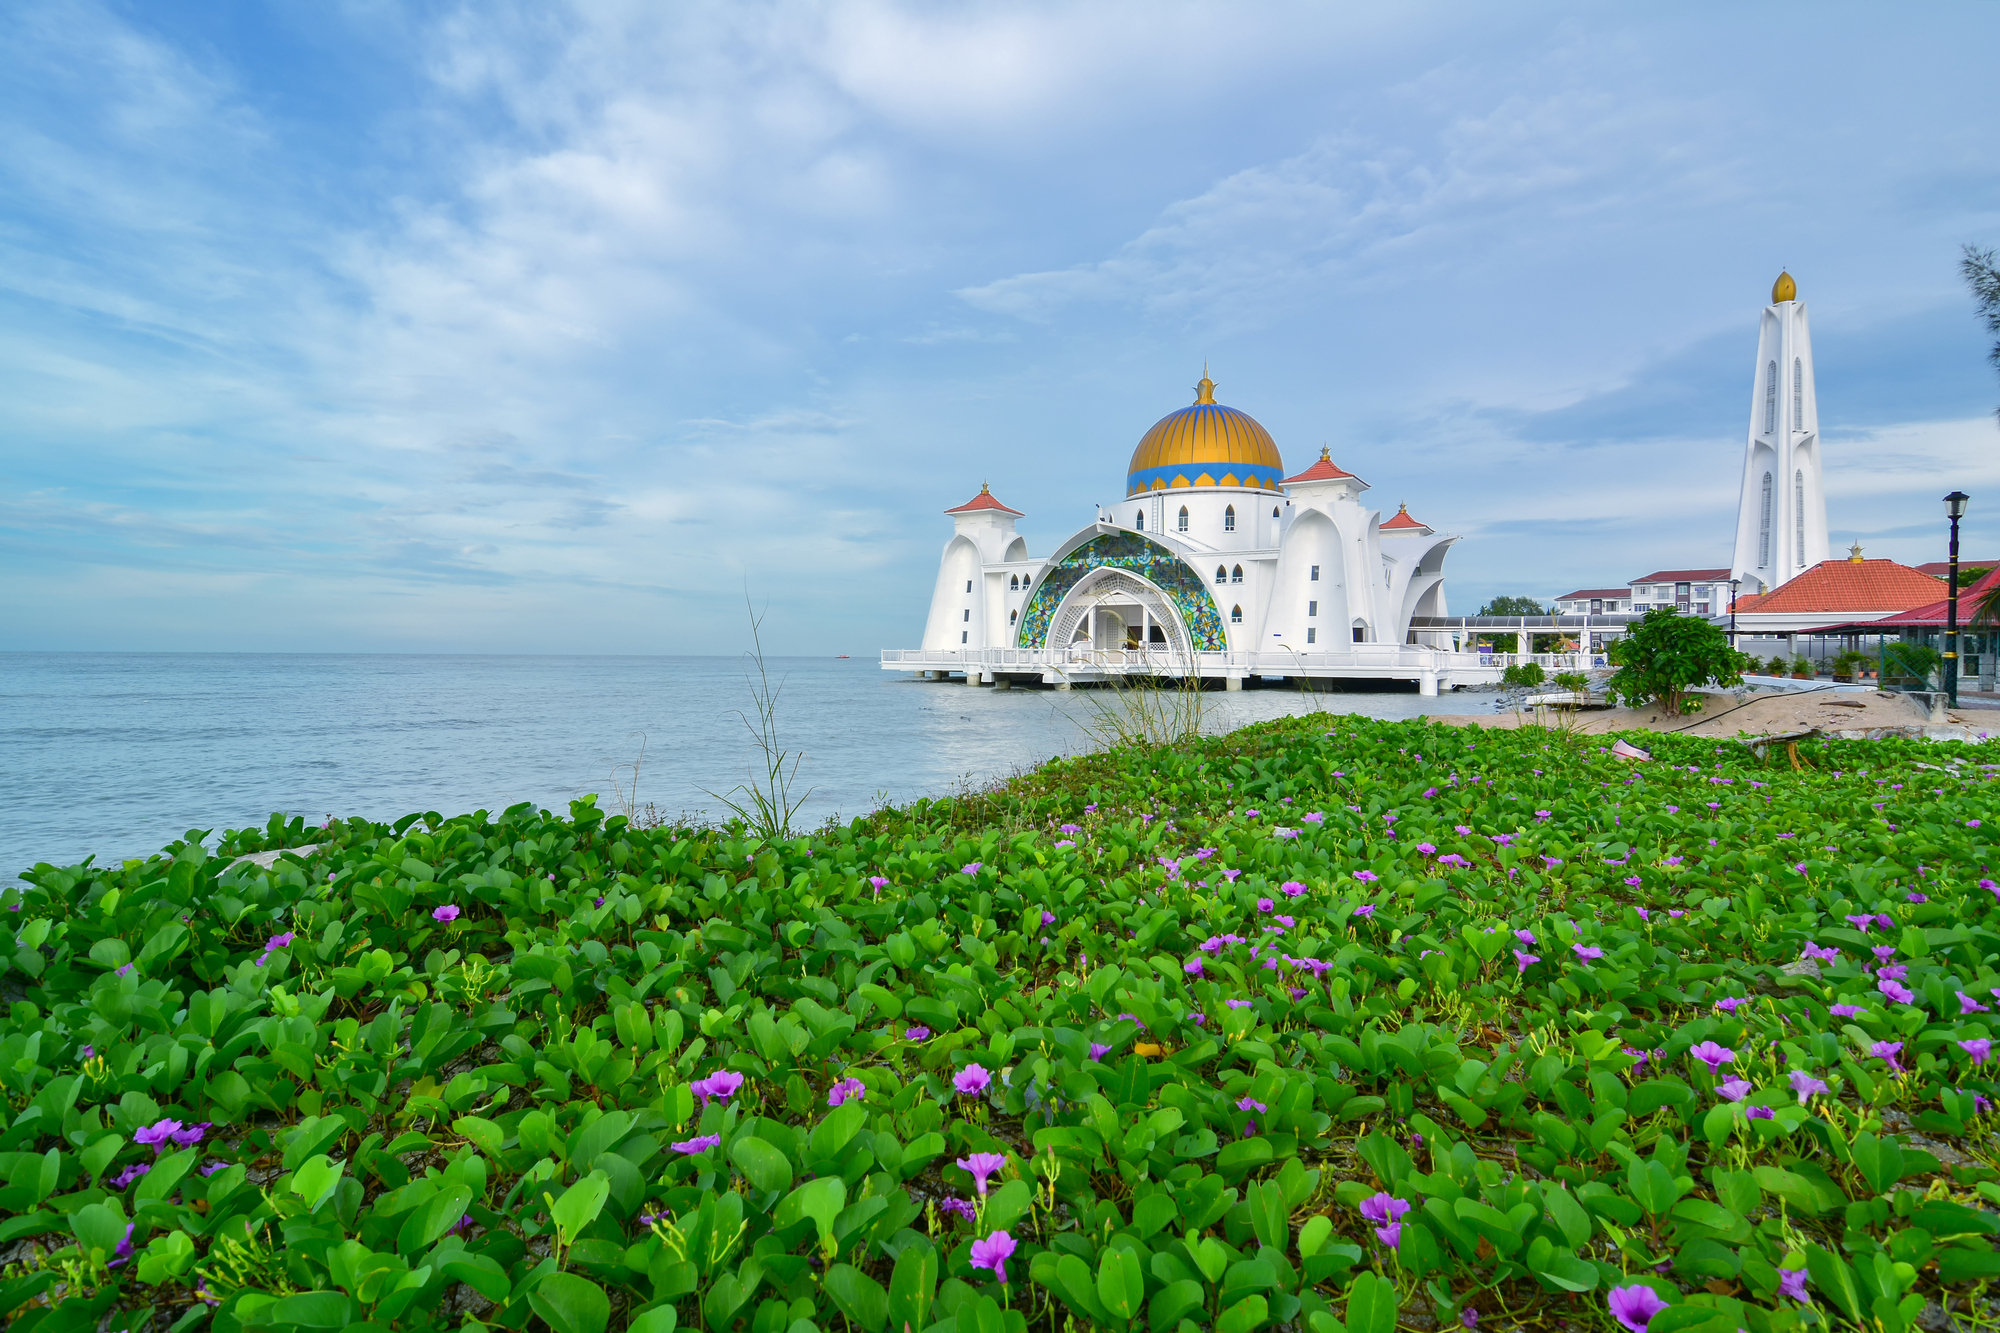 Melaka Straits Floating Mosque